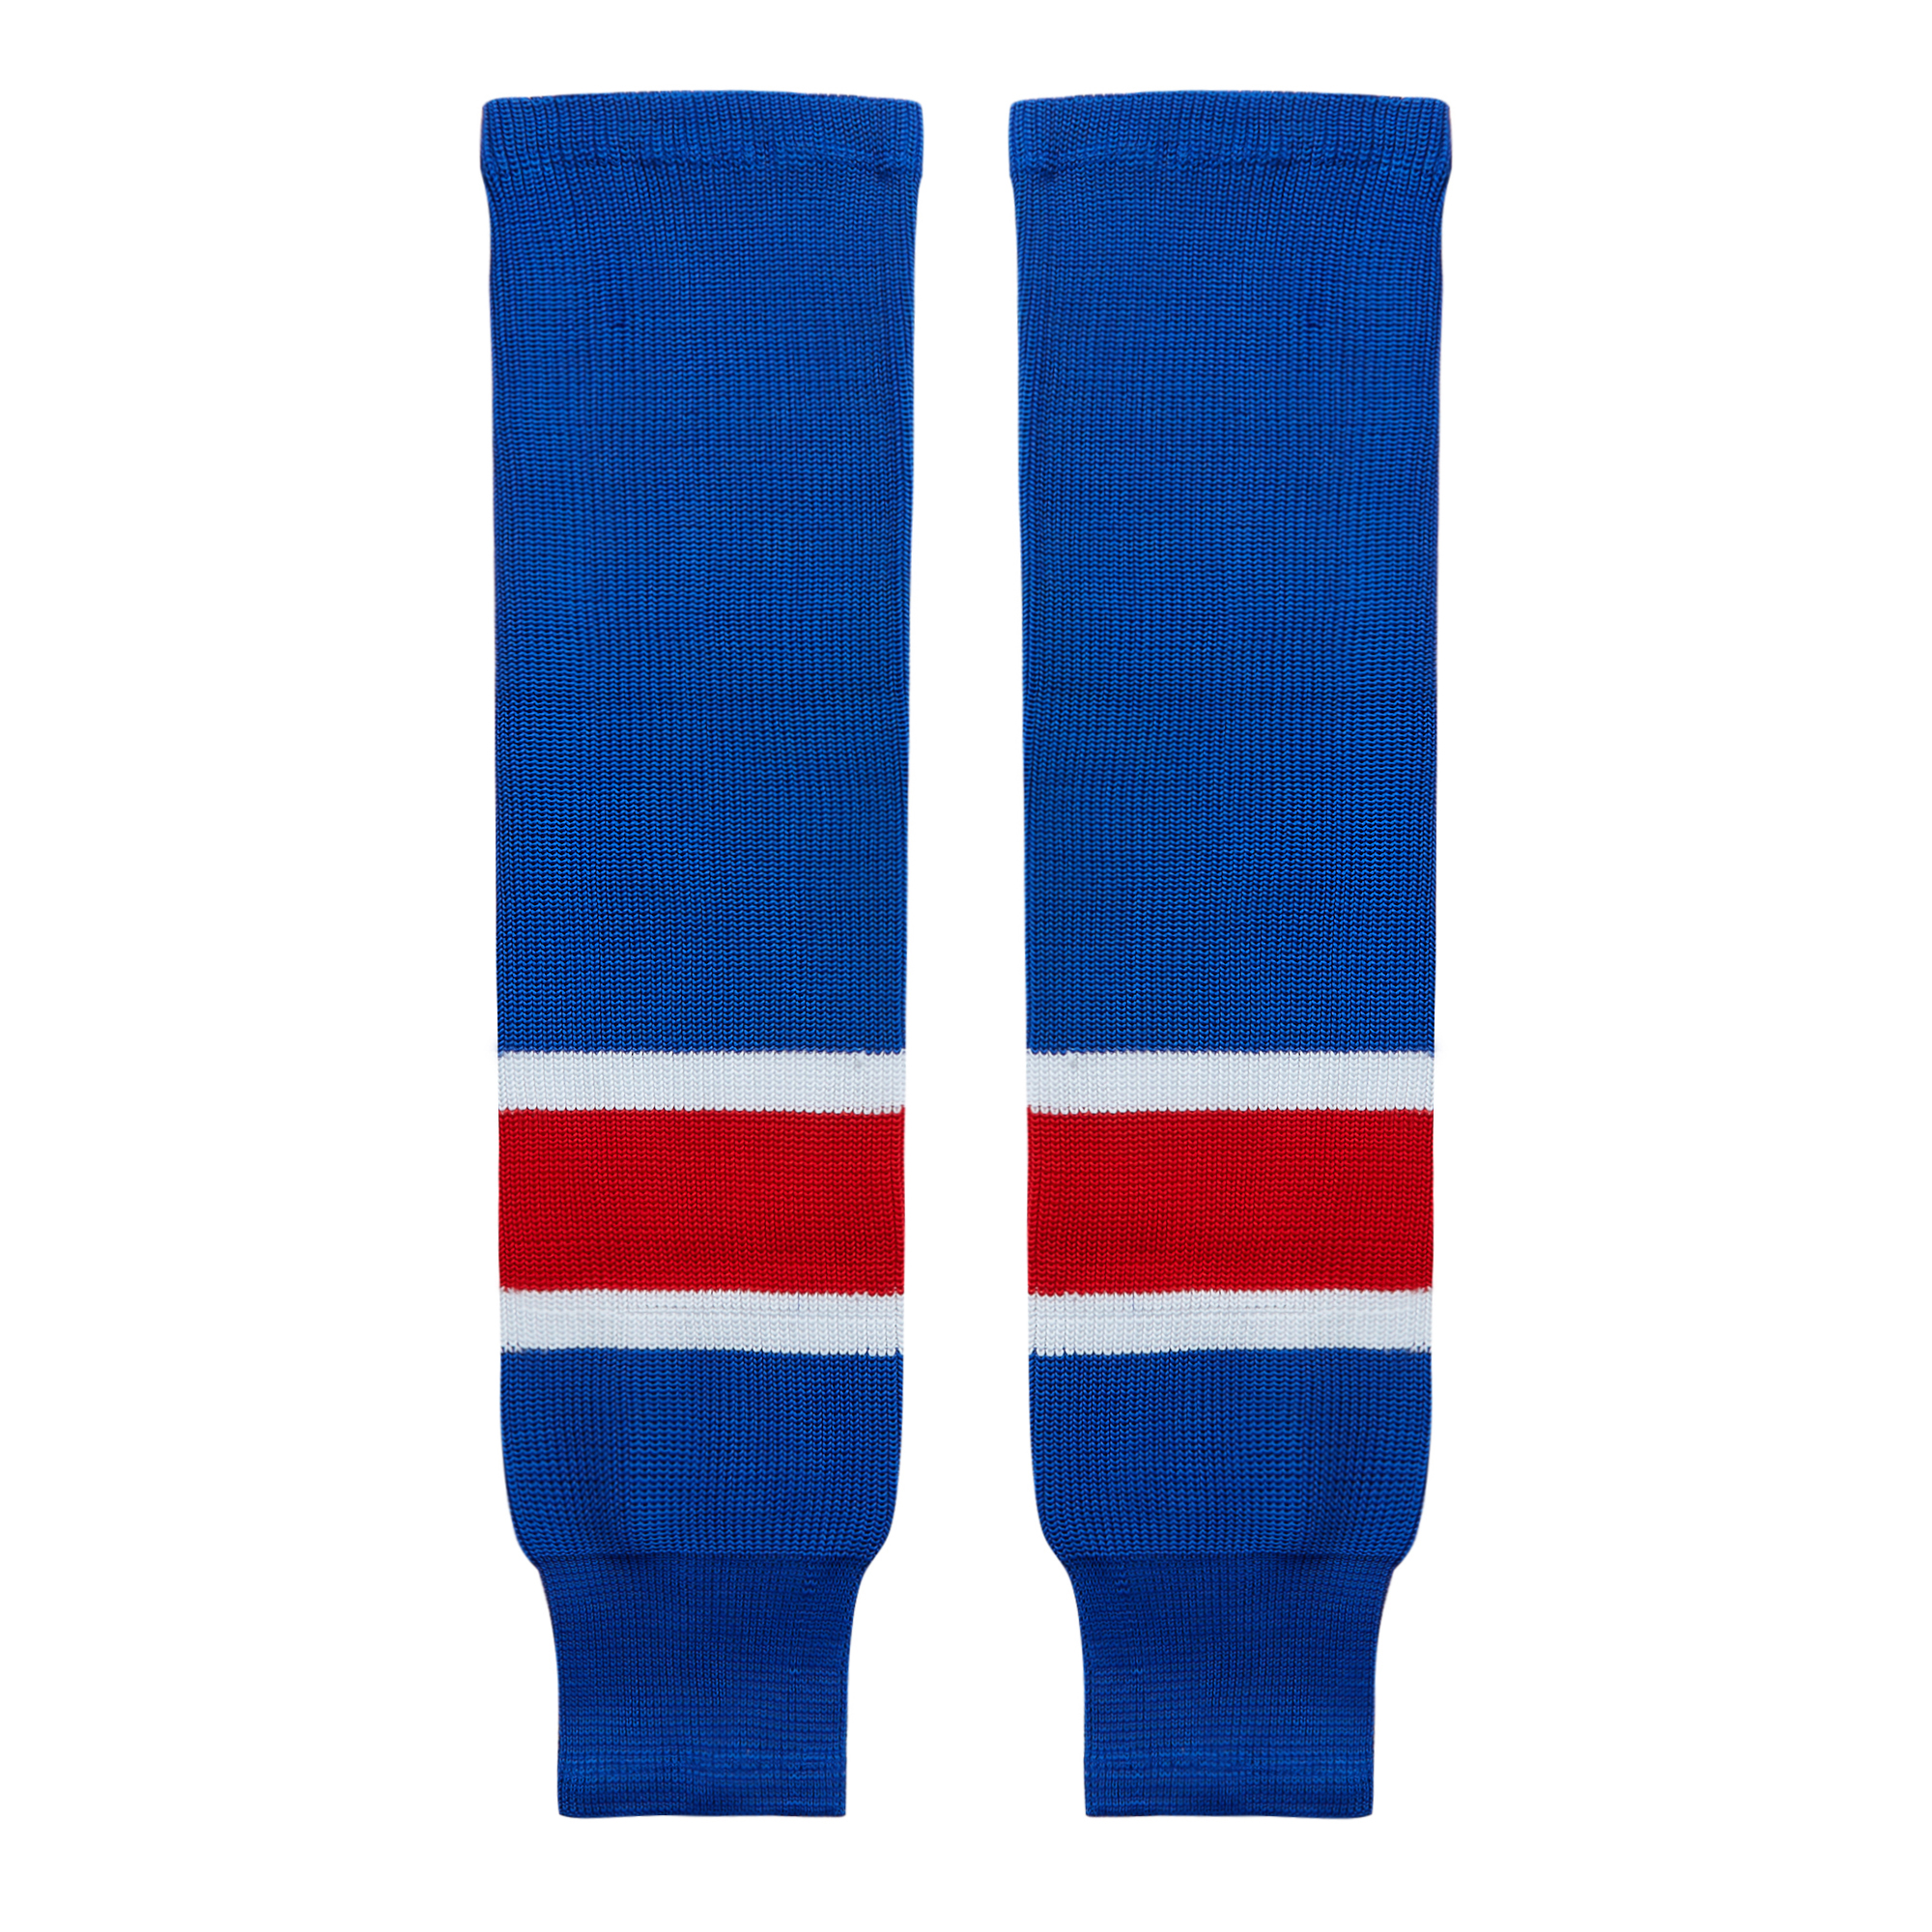 EALER HSK Series Multiple Colors Knit Hockey Socks Junior To Senior 